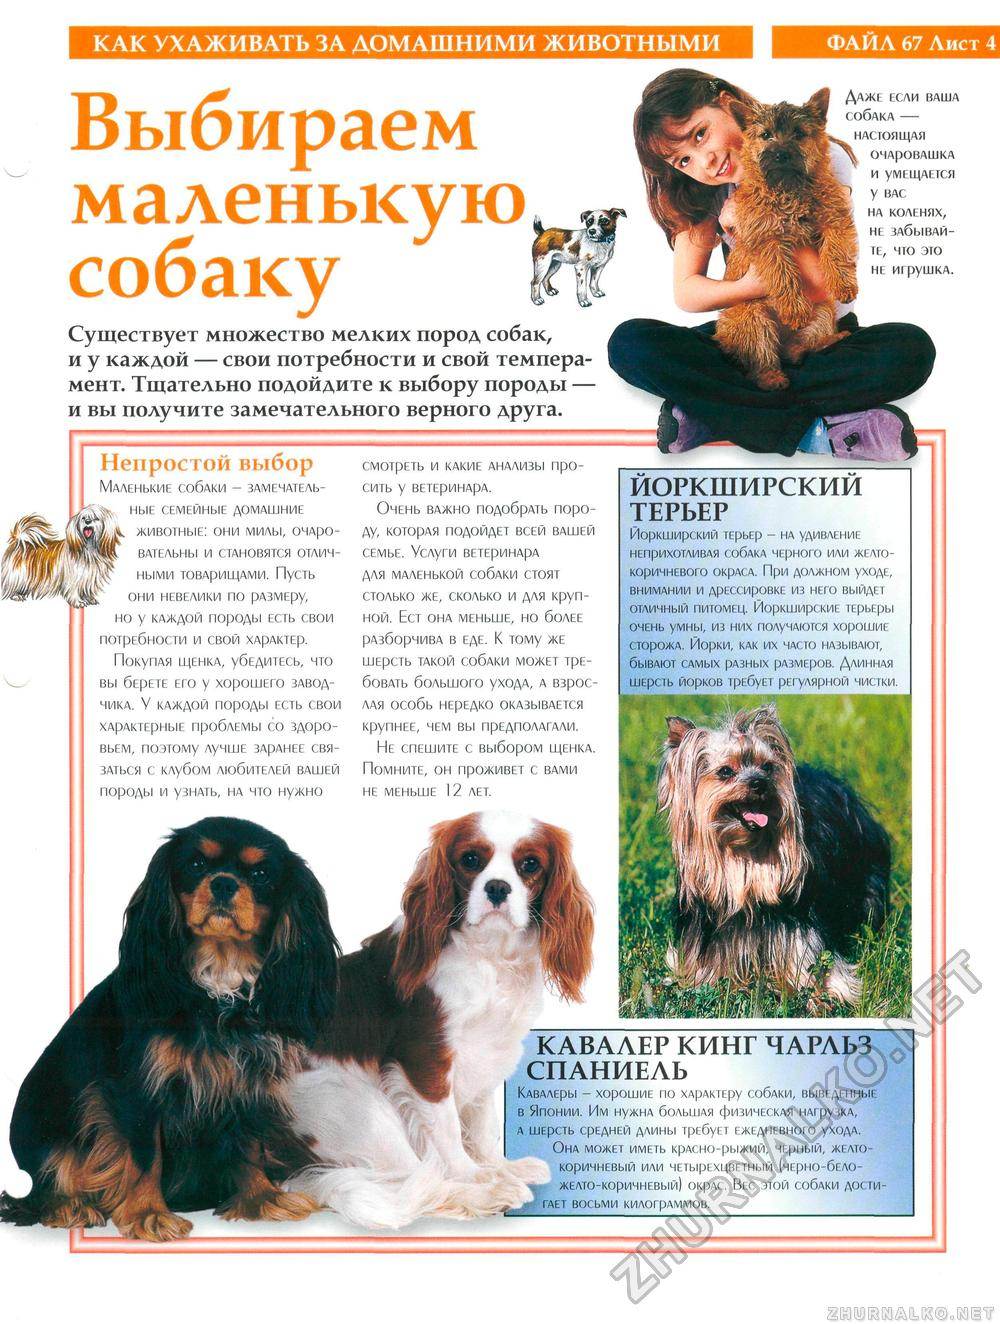 Мальтипу: описание гибридной породы собак, советы по уходу и содержанию - kotiko.ru